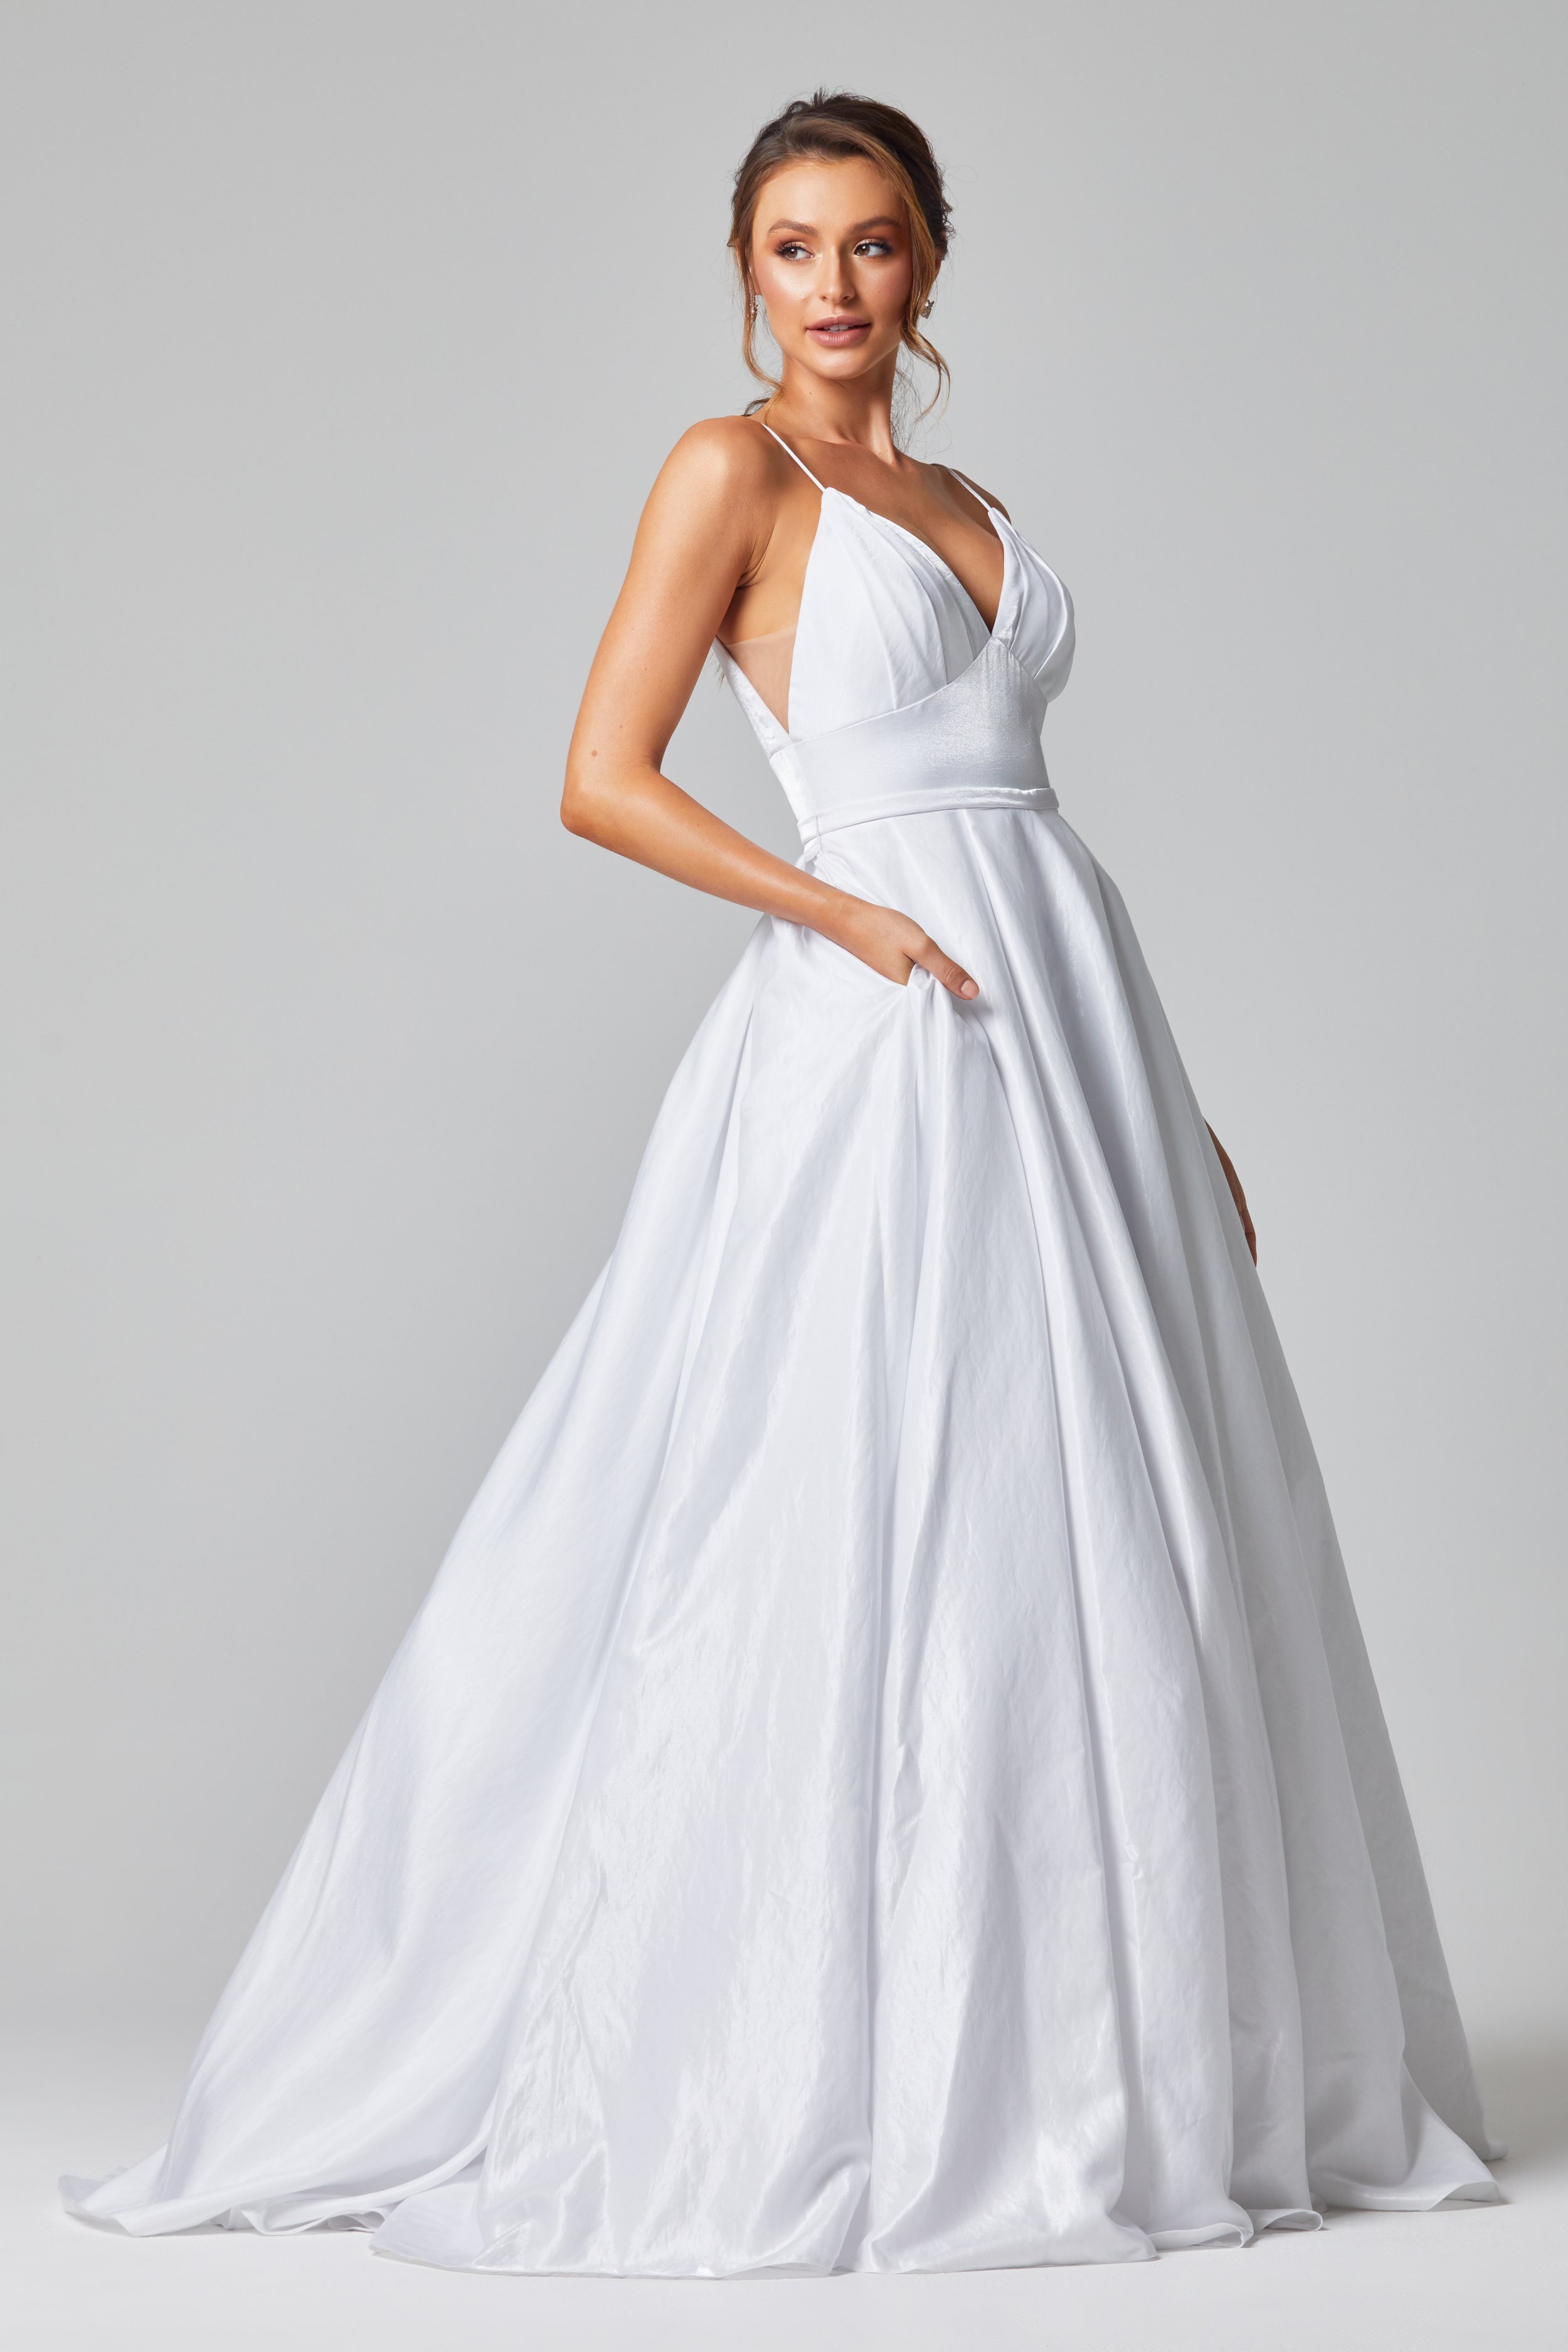 Deb Dresses Melbourne- Debutante gowns - Leah S Designs bridal